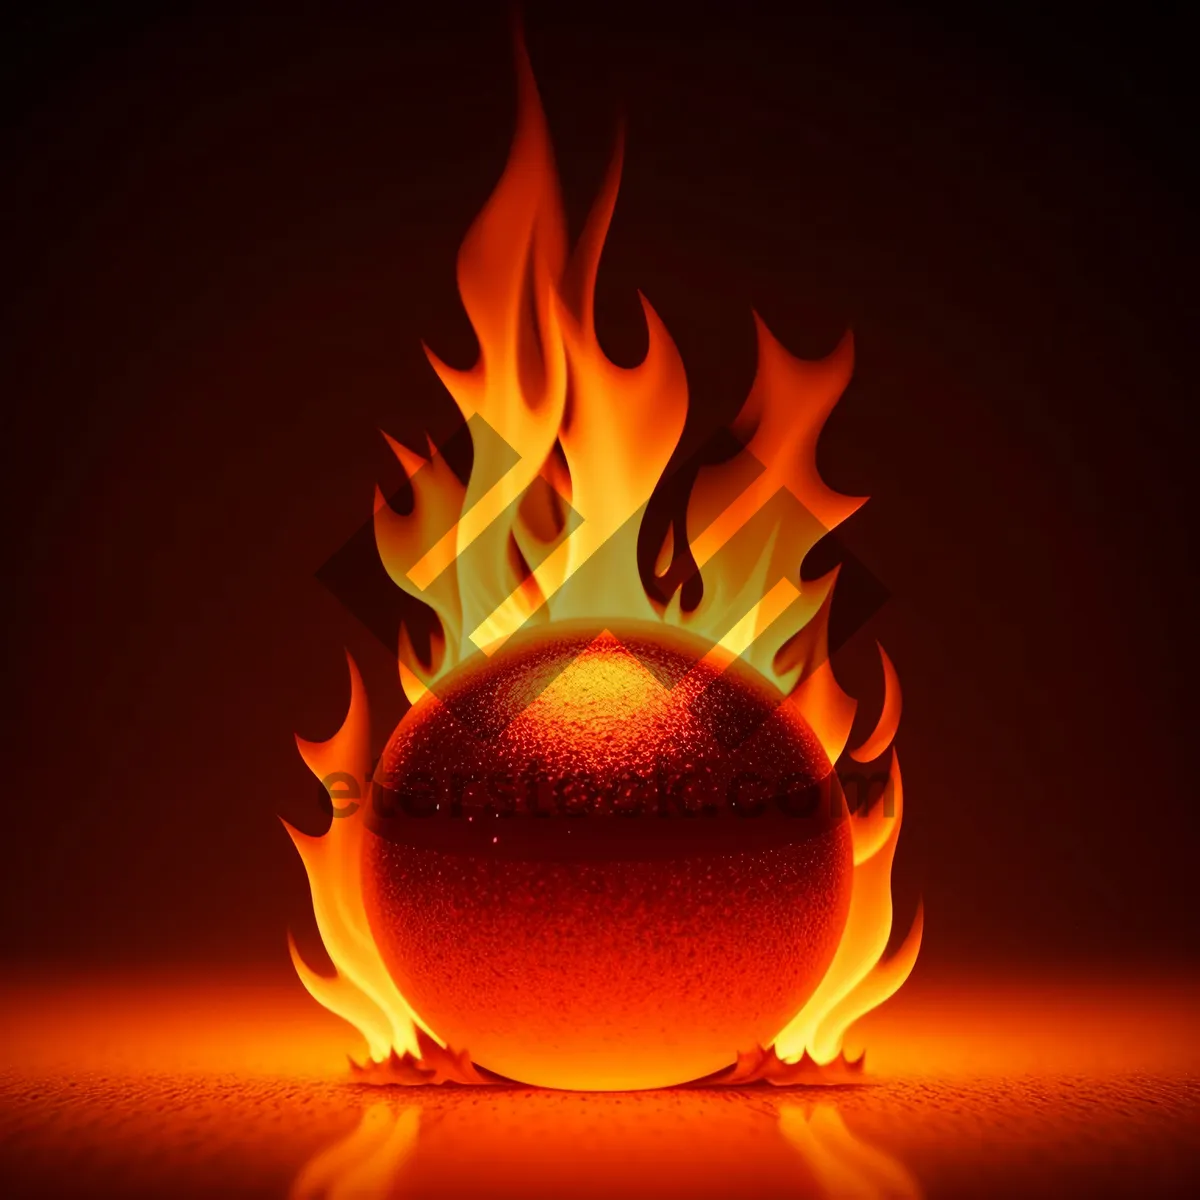 Picture of Fiery Blaze of Burning Heat